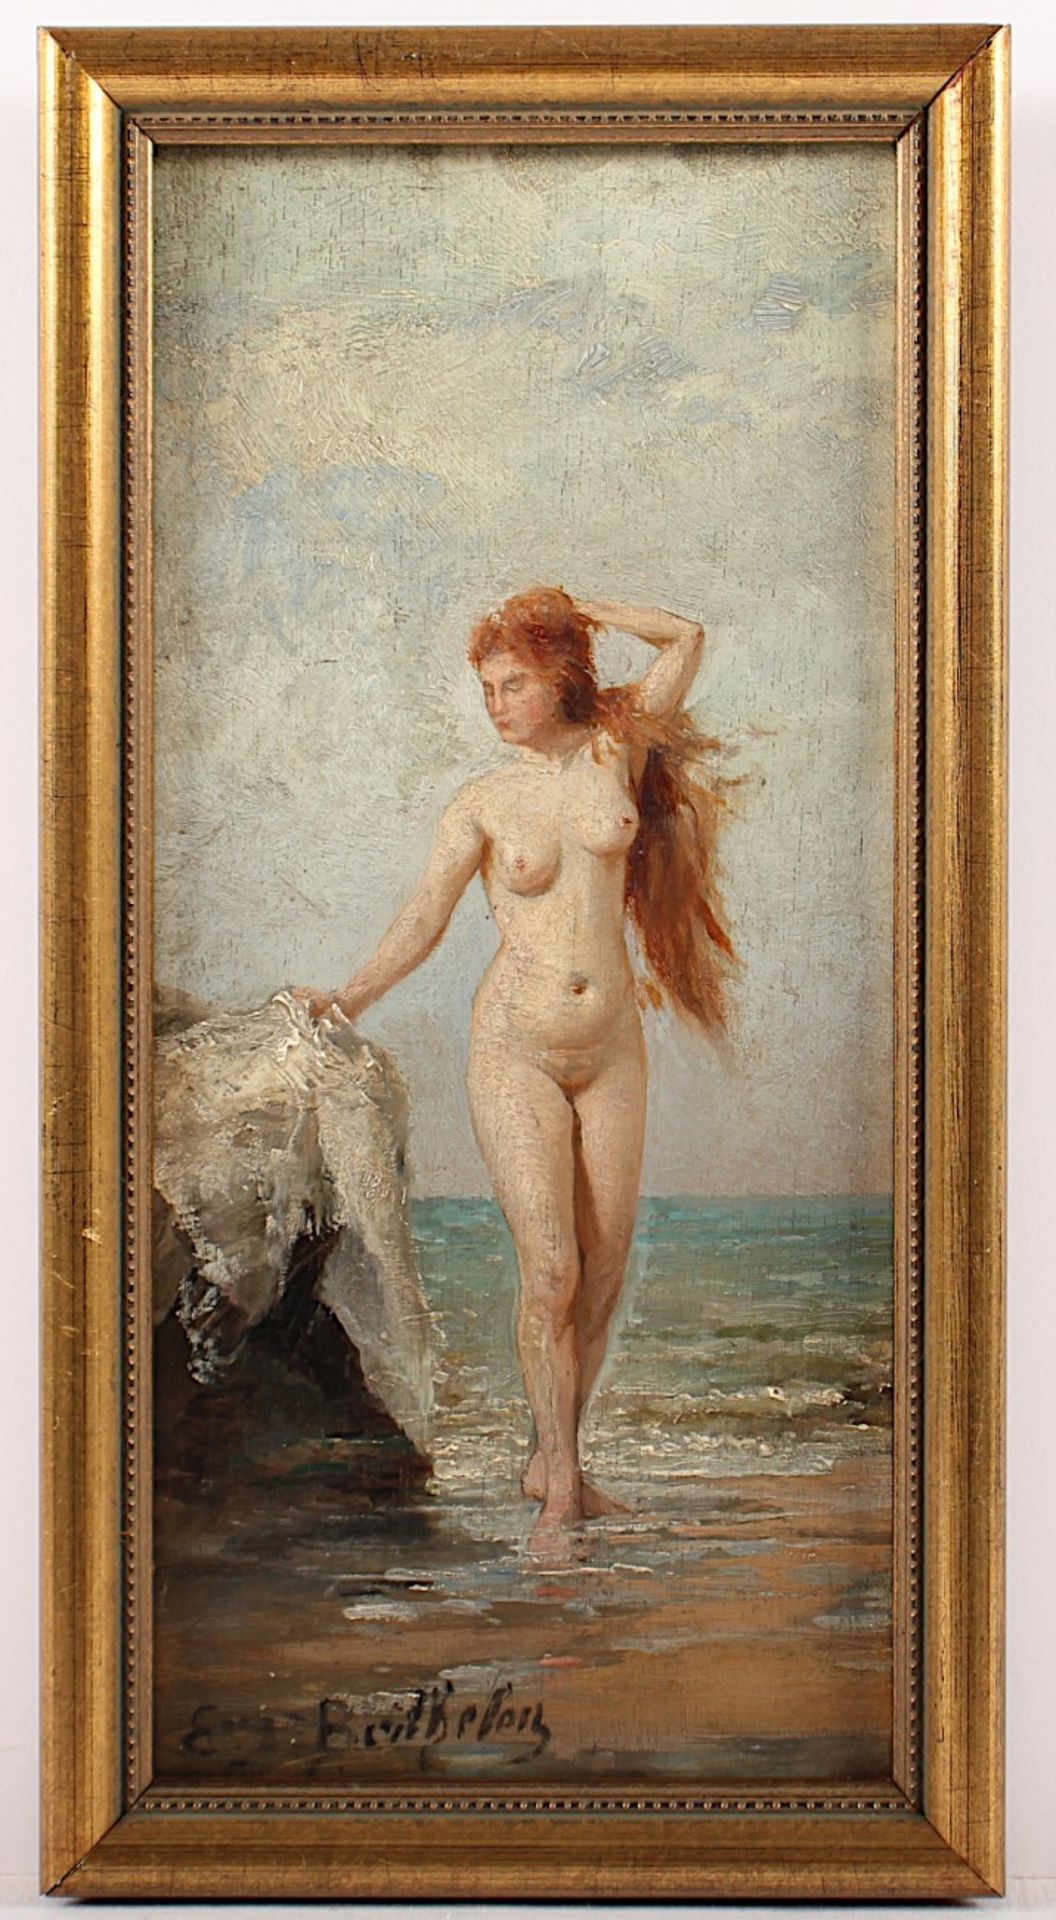 BERTHELEN, E. (Maler um 1900), "Weiblicher Akt", Öl/Holz, 24 x 11,5, unten links signiert, R. - Bild 2 aus 3